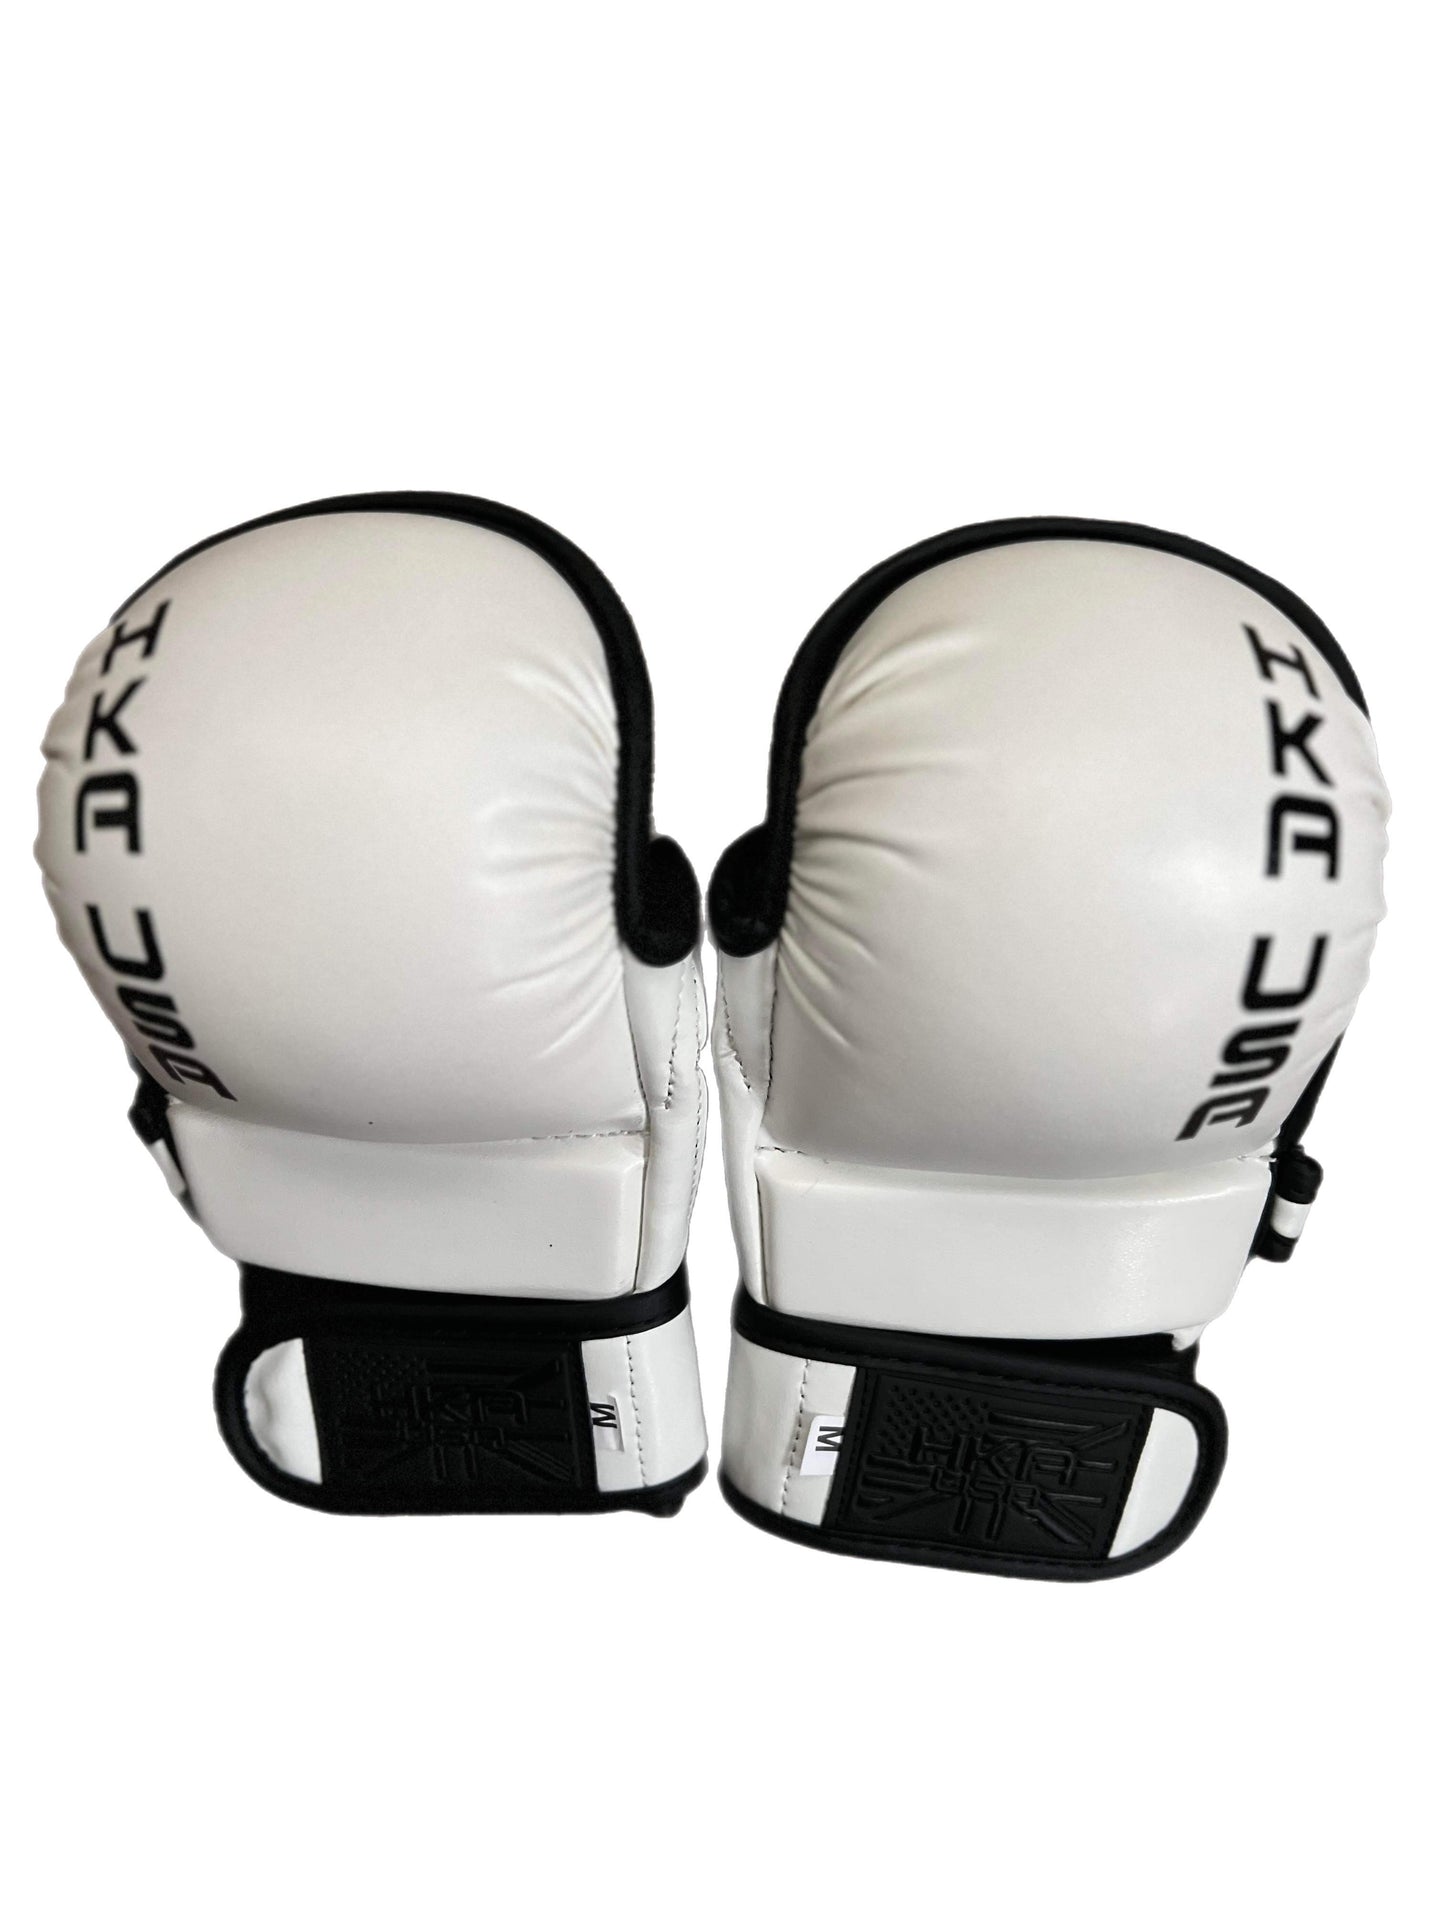 Starter line MMA Sparring Gloves-White